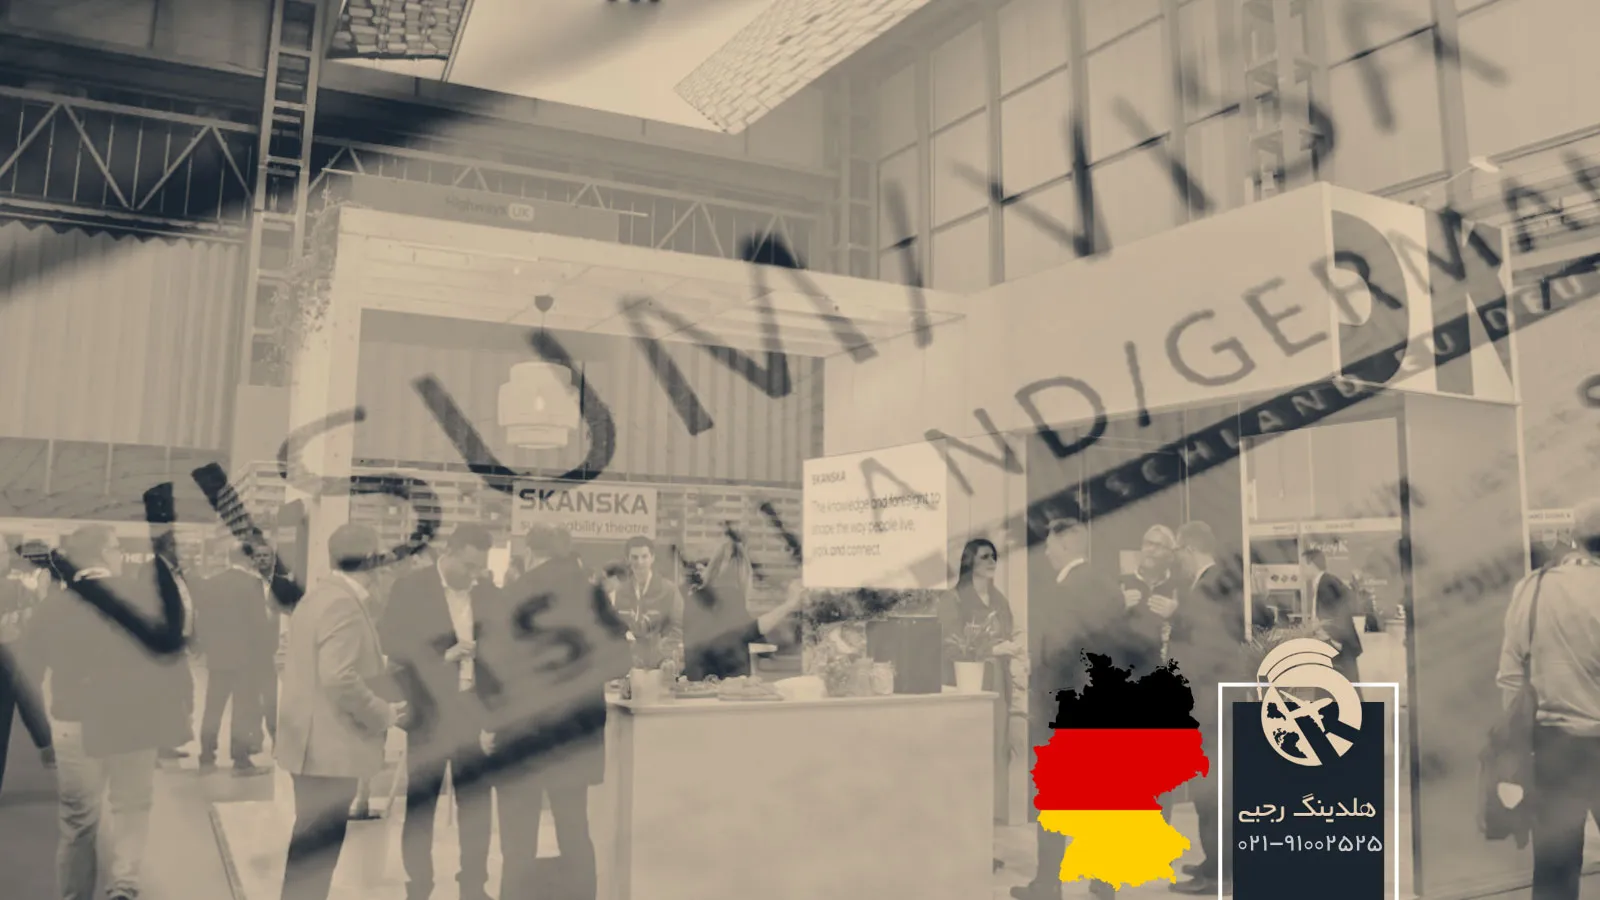 ویزای نمایشگاهی آلمان، فرصتی برای شرکت در نمایشگاه های آلمان